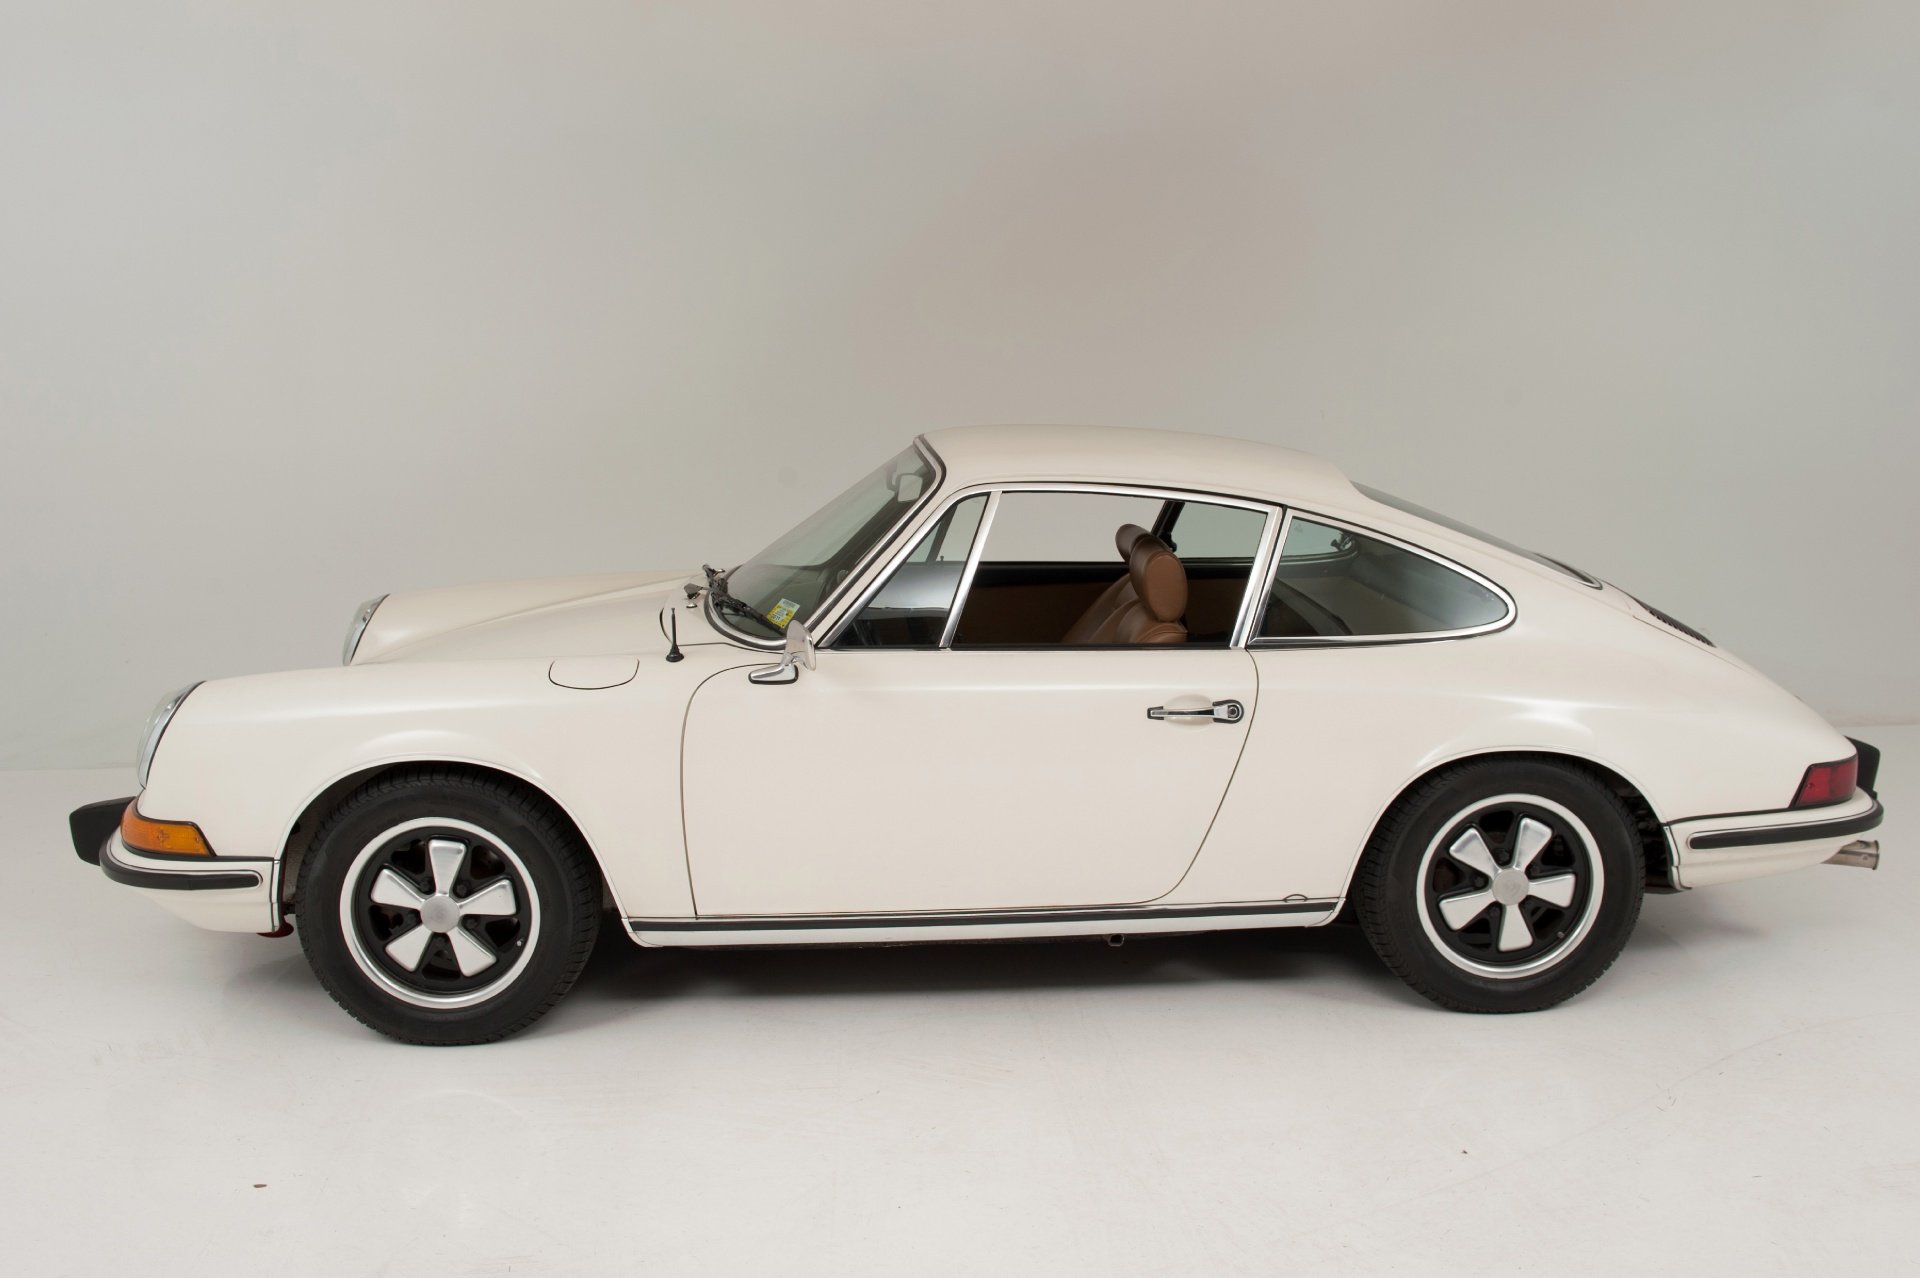 1963, Porsche, 911 t, Coupe, White, Classic, Cars Wallpaper